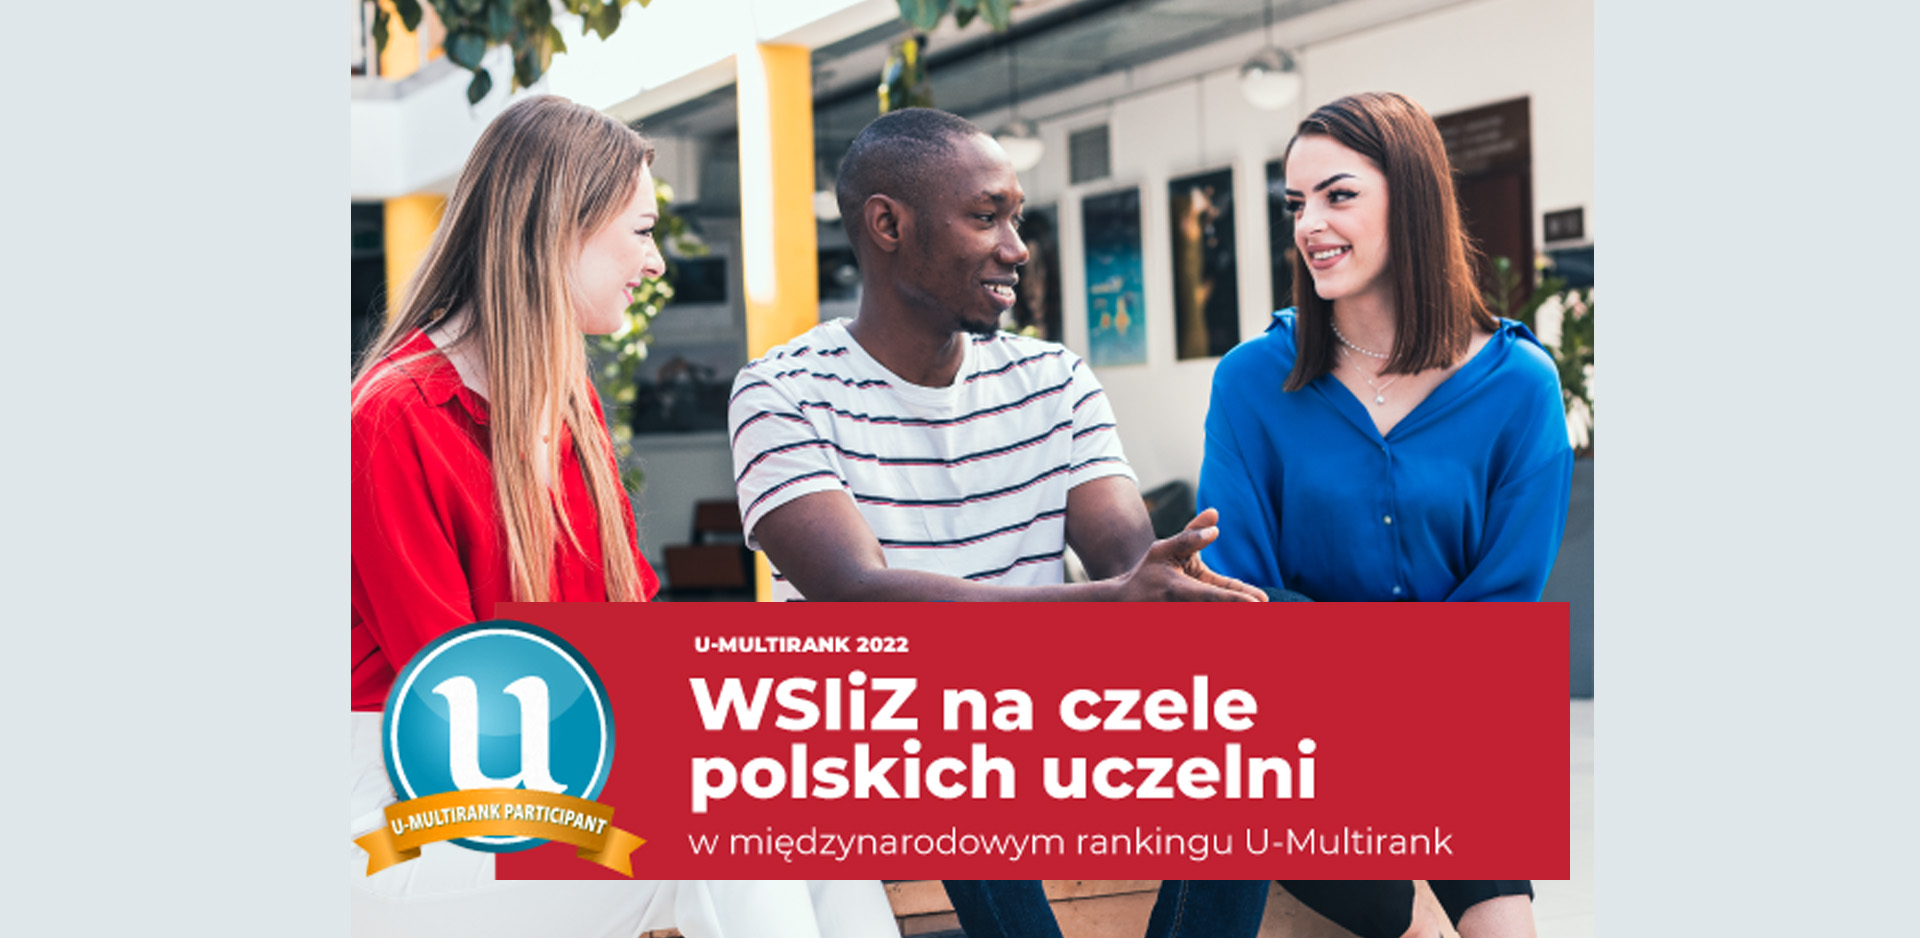 WSIiZ na czele polskich uczelni